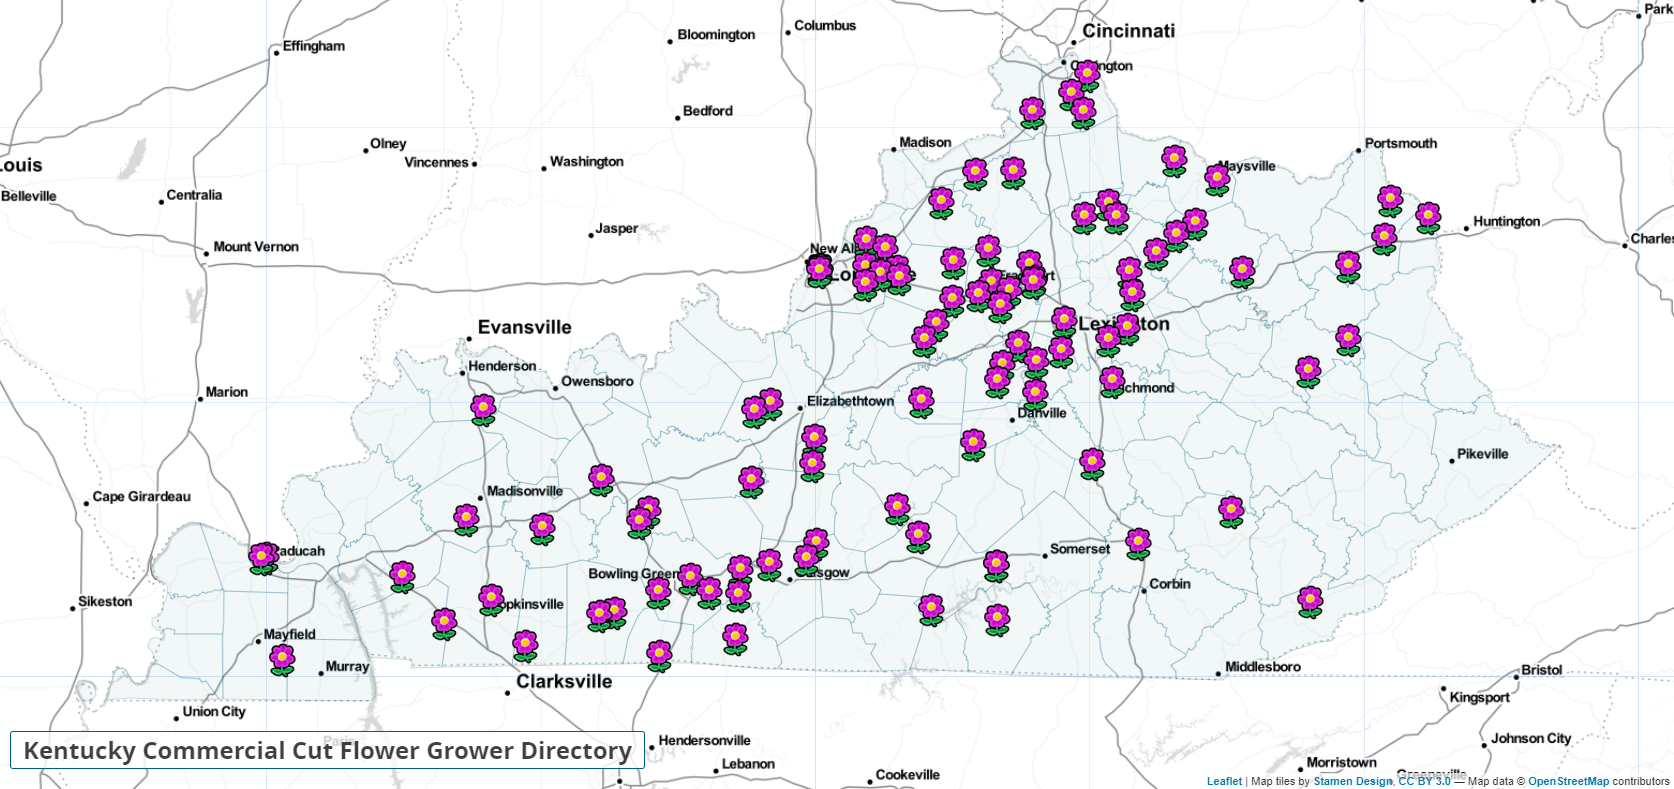 Kentucky Commercial Cut Flower Grower Directory Map